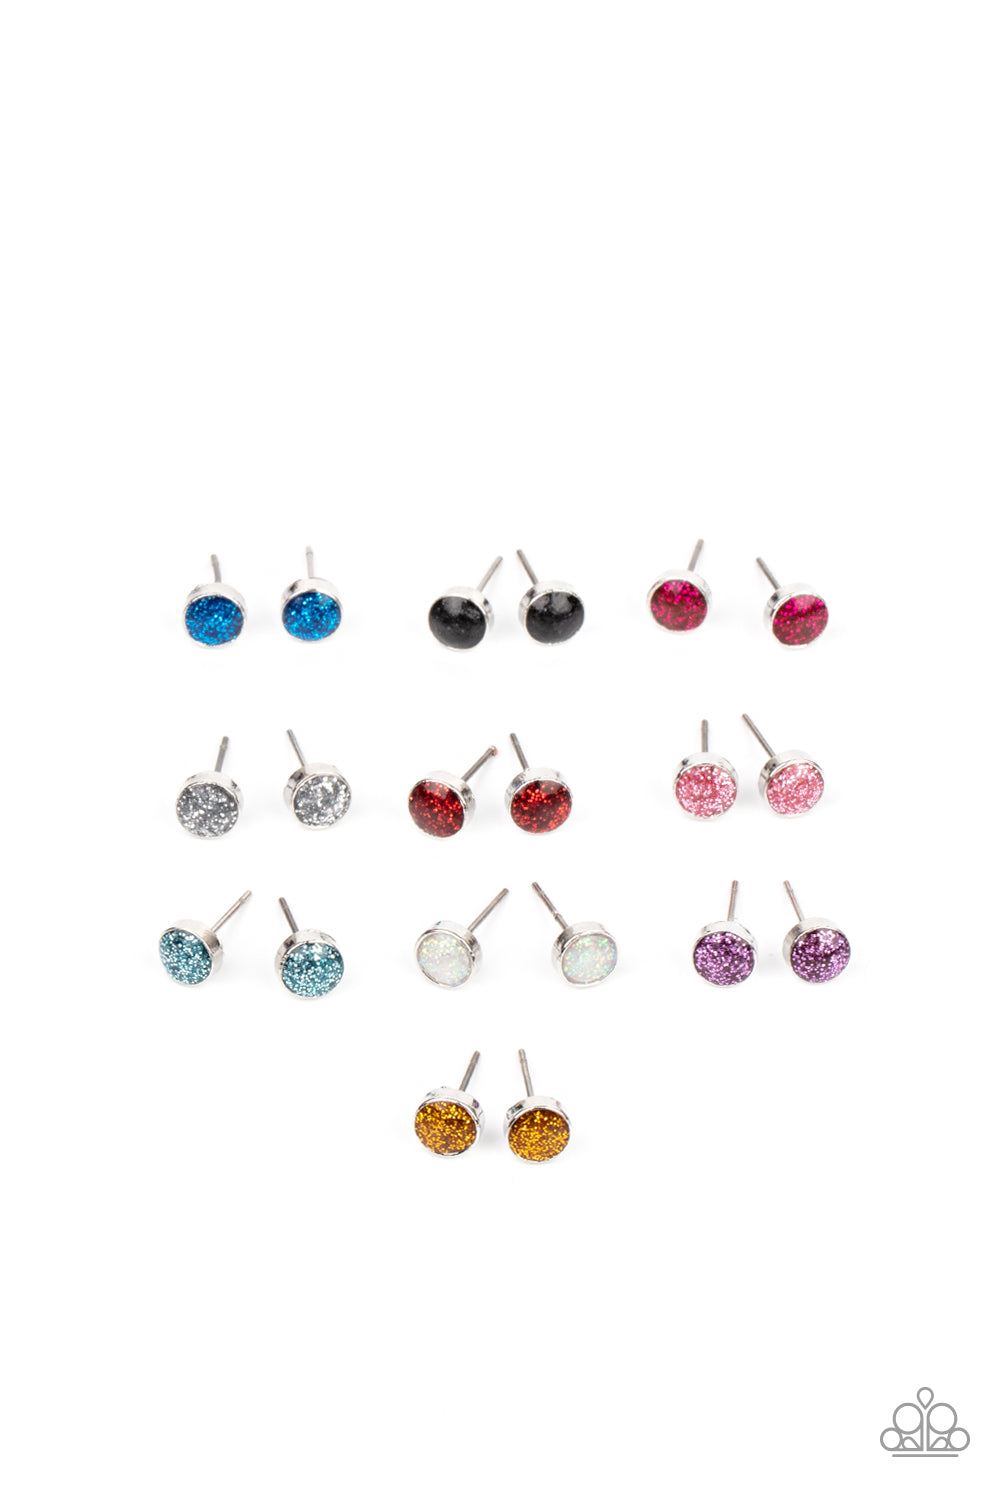 Starlet Shimmer Small Glitter ALL COLOR Stud Earring Pack♥ Starlet Shimmer Earrings♥ Paparazzi ♥